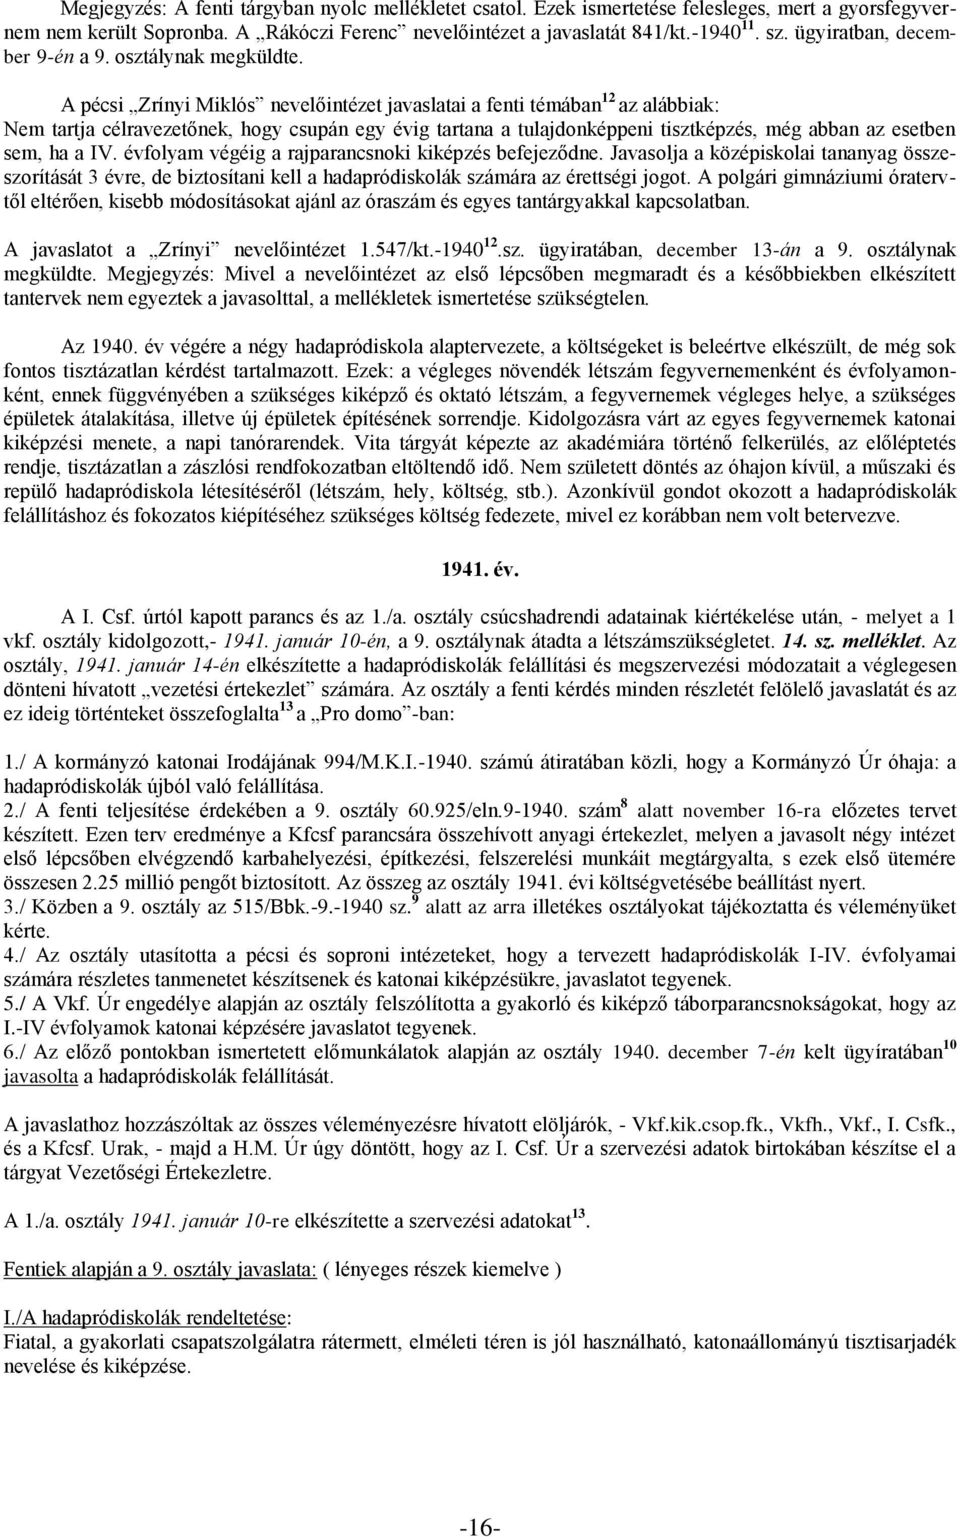 A pécsi Zrínyi Miklós nevelőintézet javaslatai a fenti témában 12 az alábbiak: Nem tartja célravezetőnek, hogy csupán egy évig tartana a tulajdonképpeni tisztképzés, még abban az esetben sem, ha a IV.